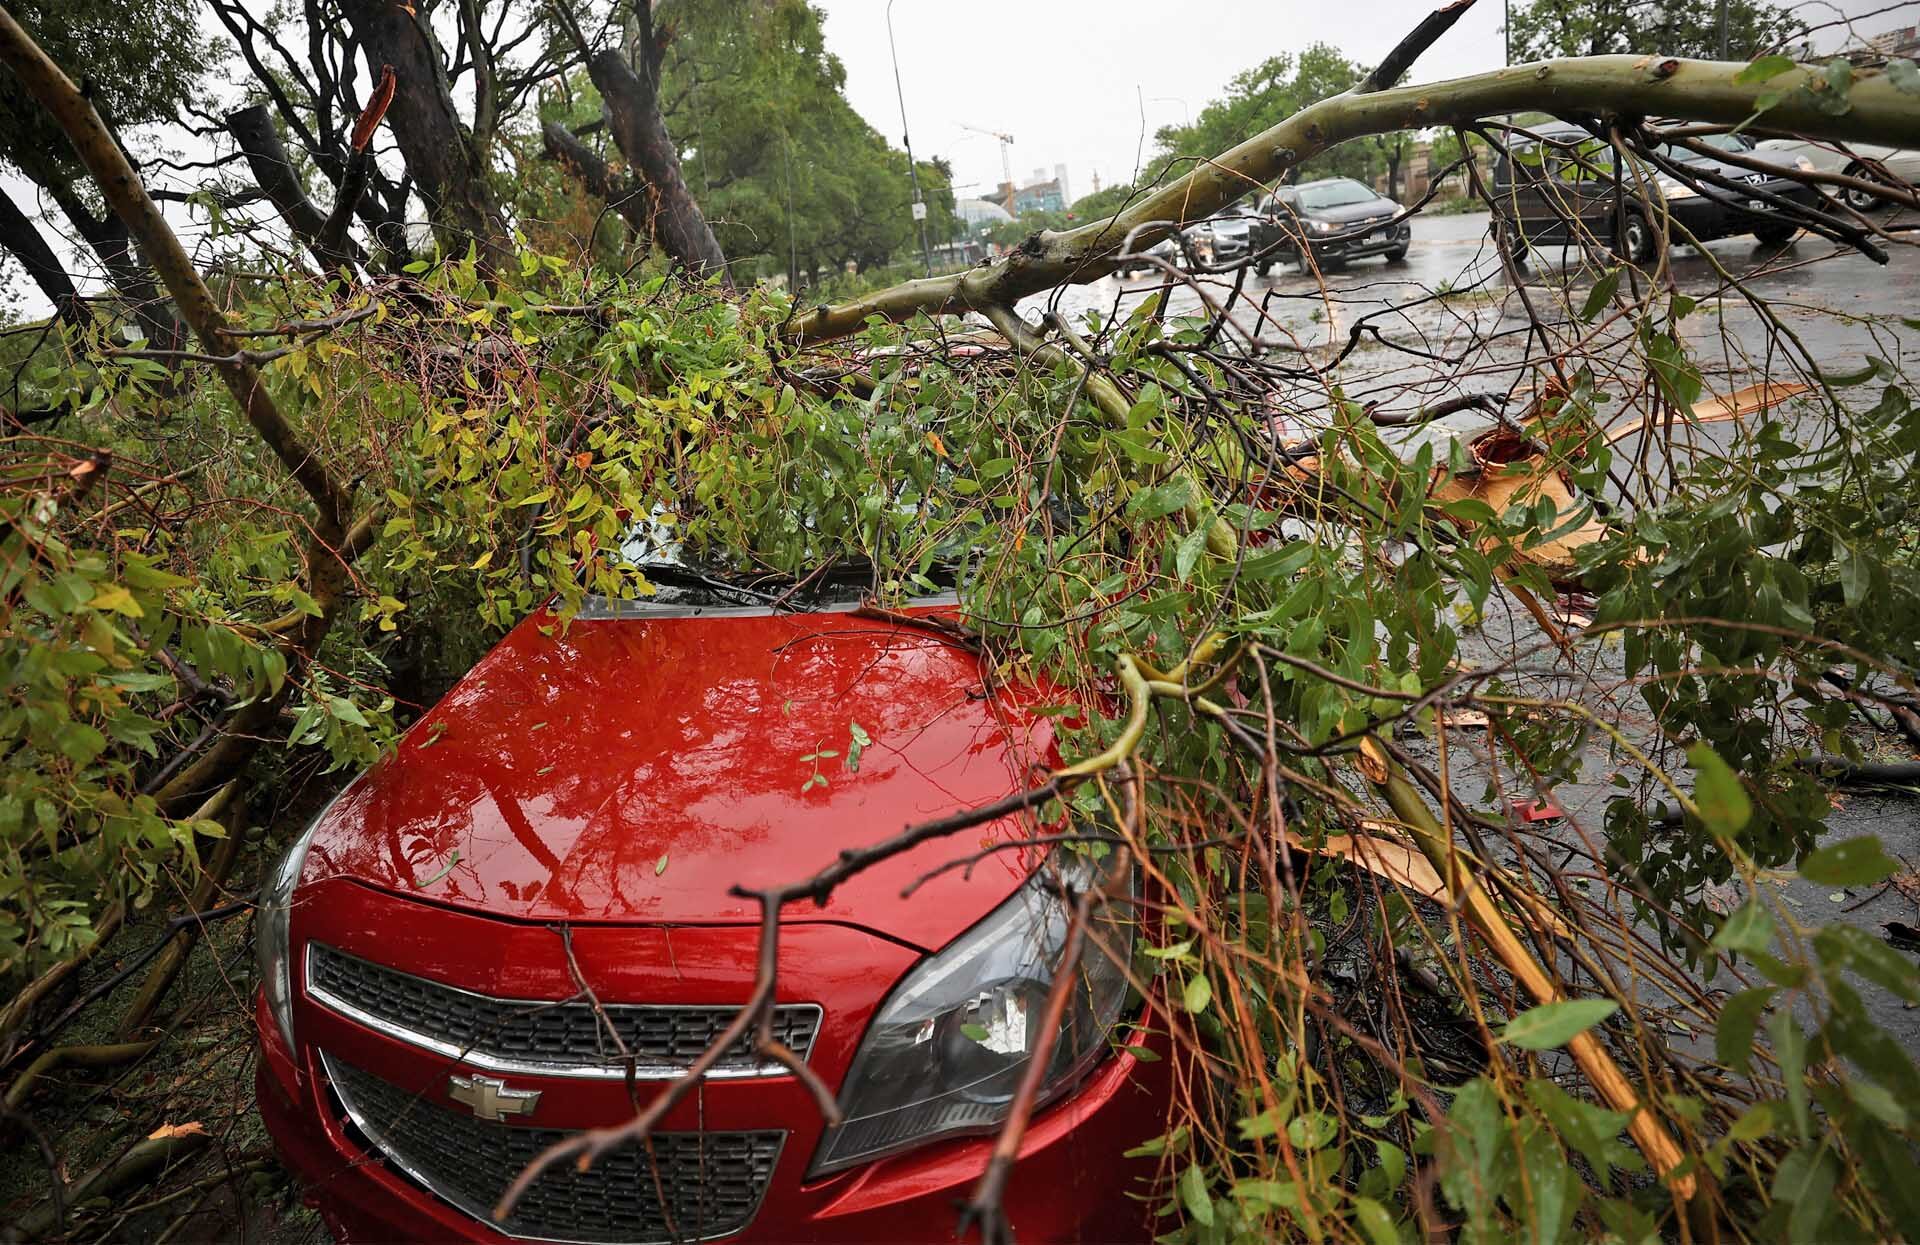 พายุซัดถล่มอาร์เจนตินา “ฝนหนัก-ลมกระโชกแรง” สังเวยแล้ว 14 ราย-เจ็บอื้อ